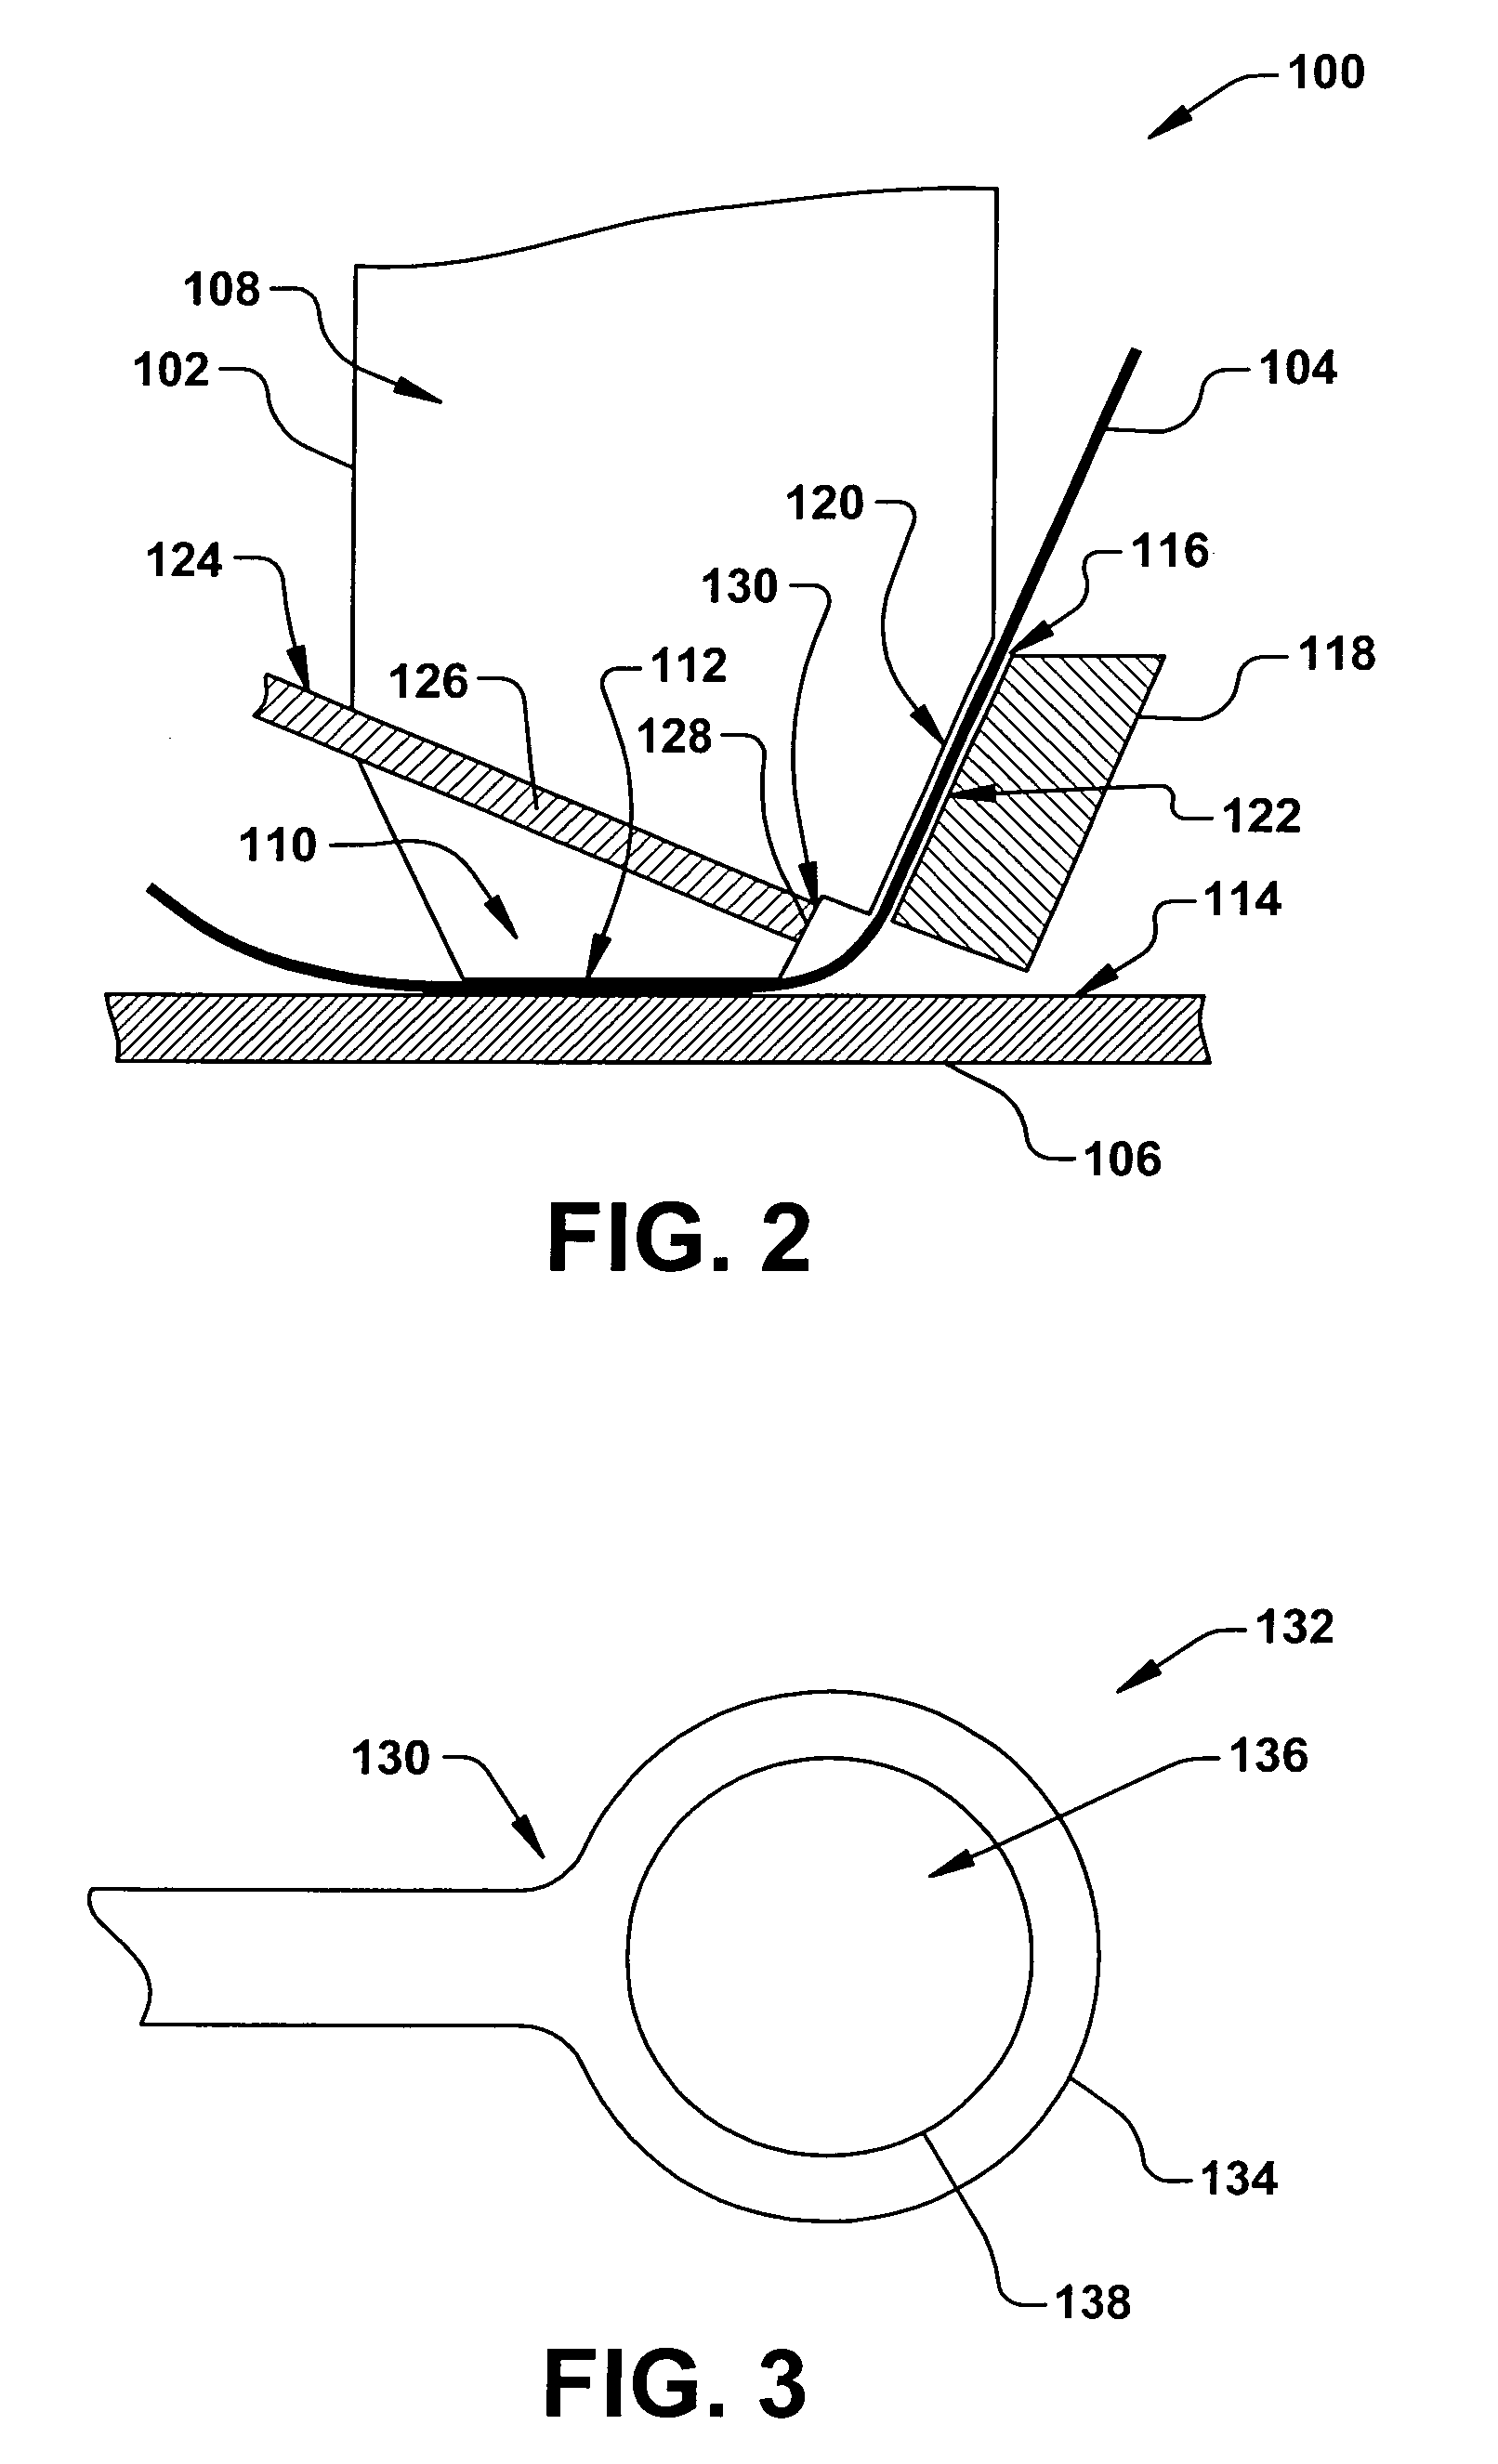 Bond capillary design for ribbon wire bonding